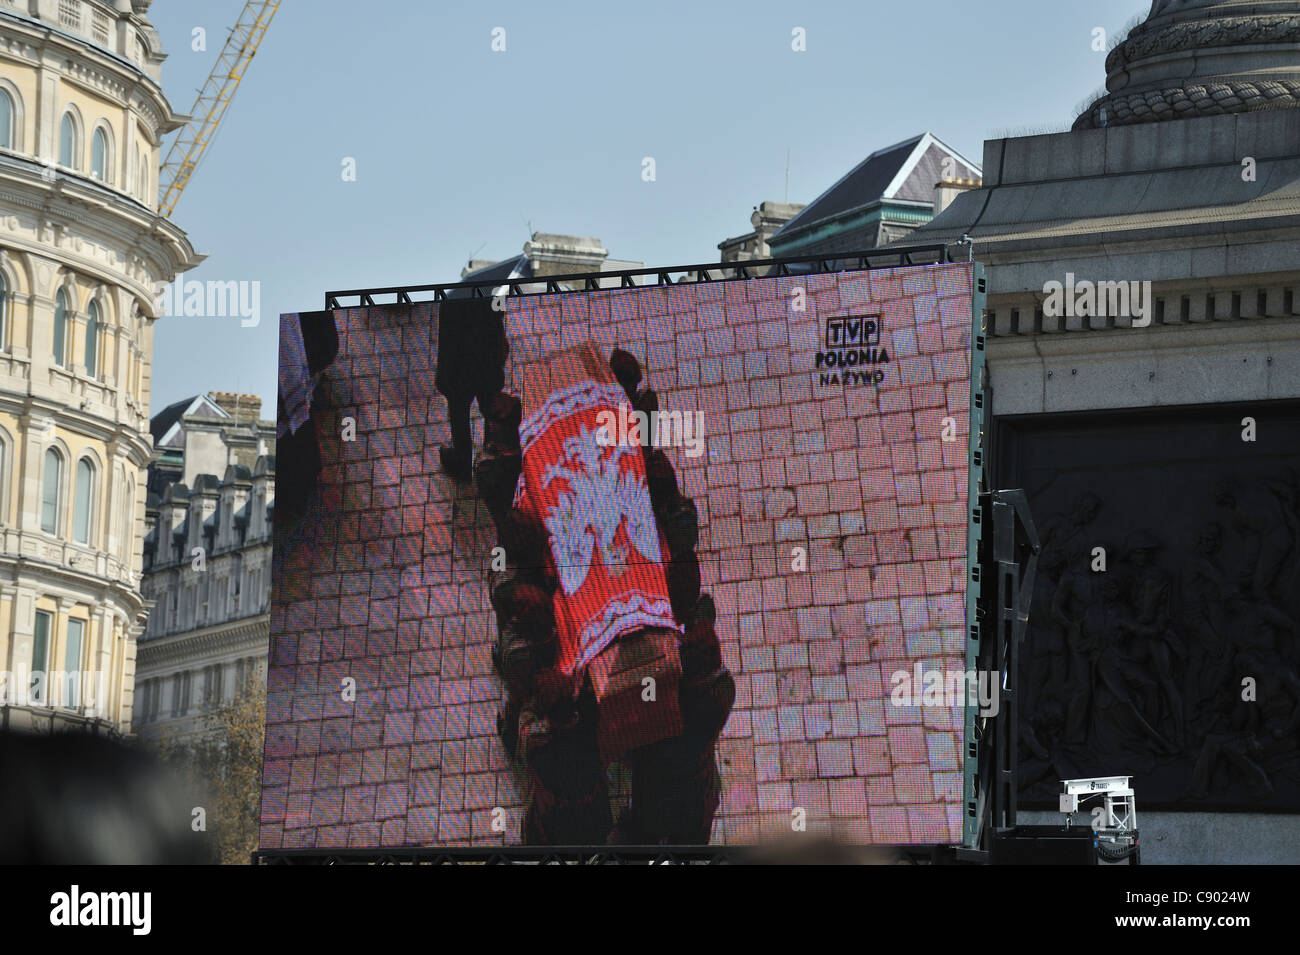 Grand écran montrant les funérailles du président polonais Lech Kaczynski, avril 2010, Trafalgar Square, Londres, UK Banque D'Images